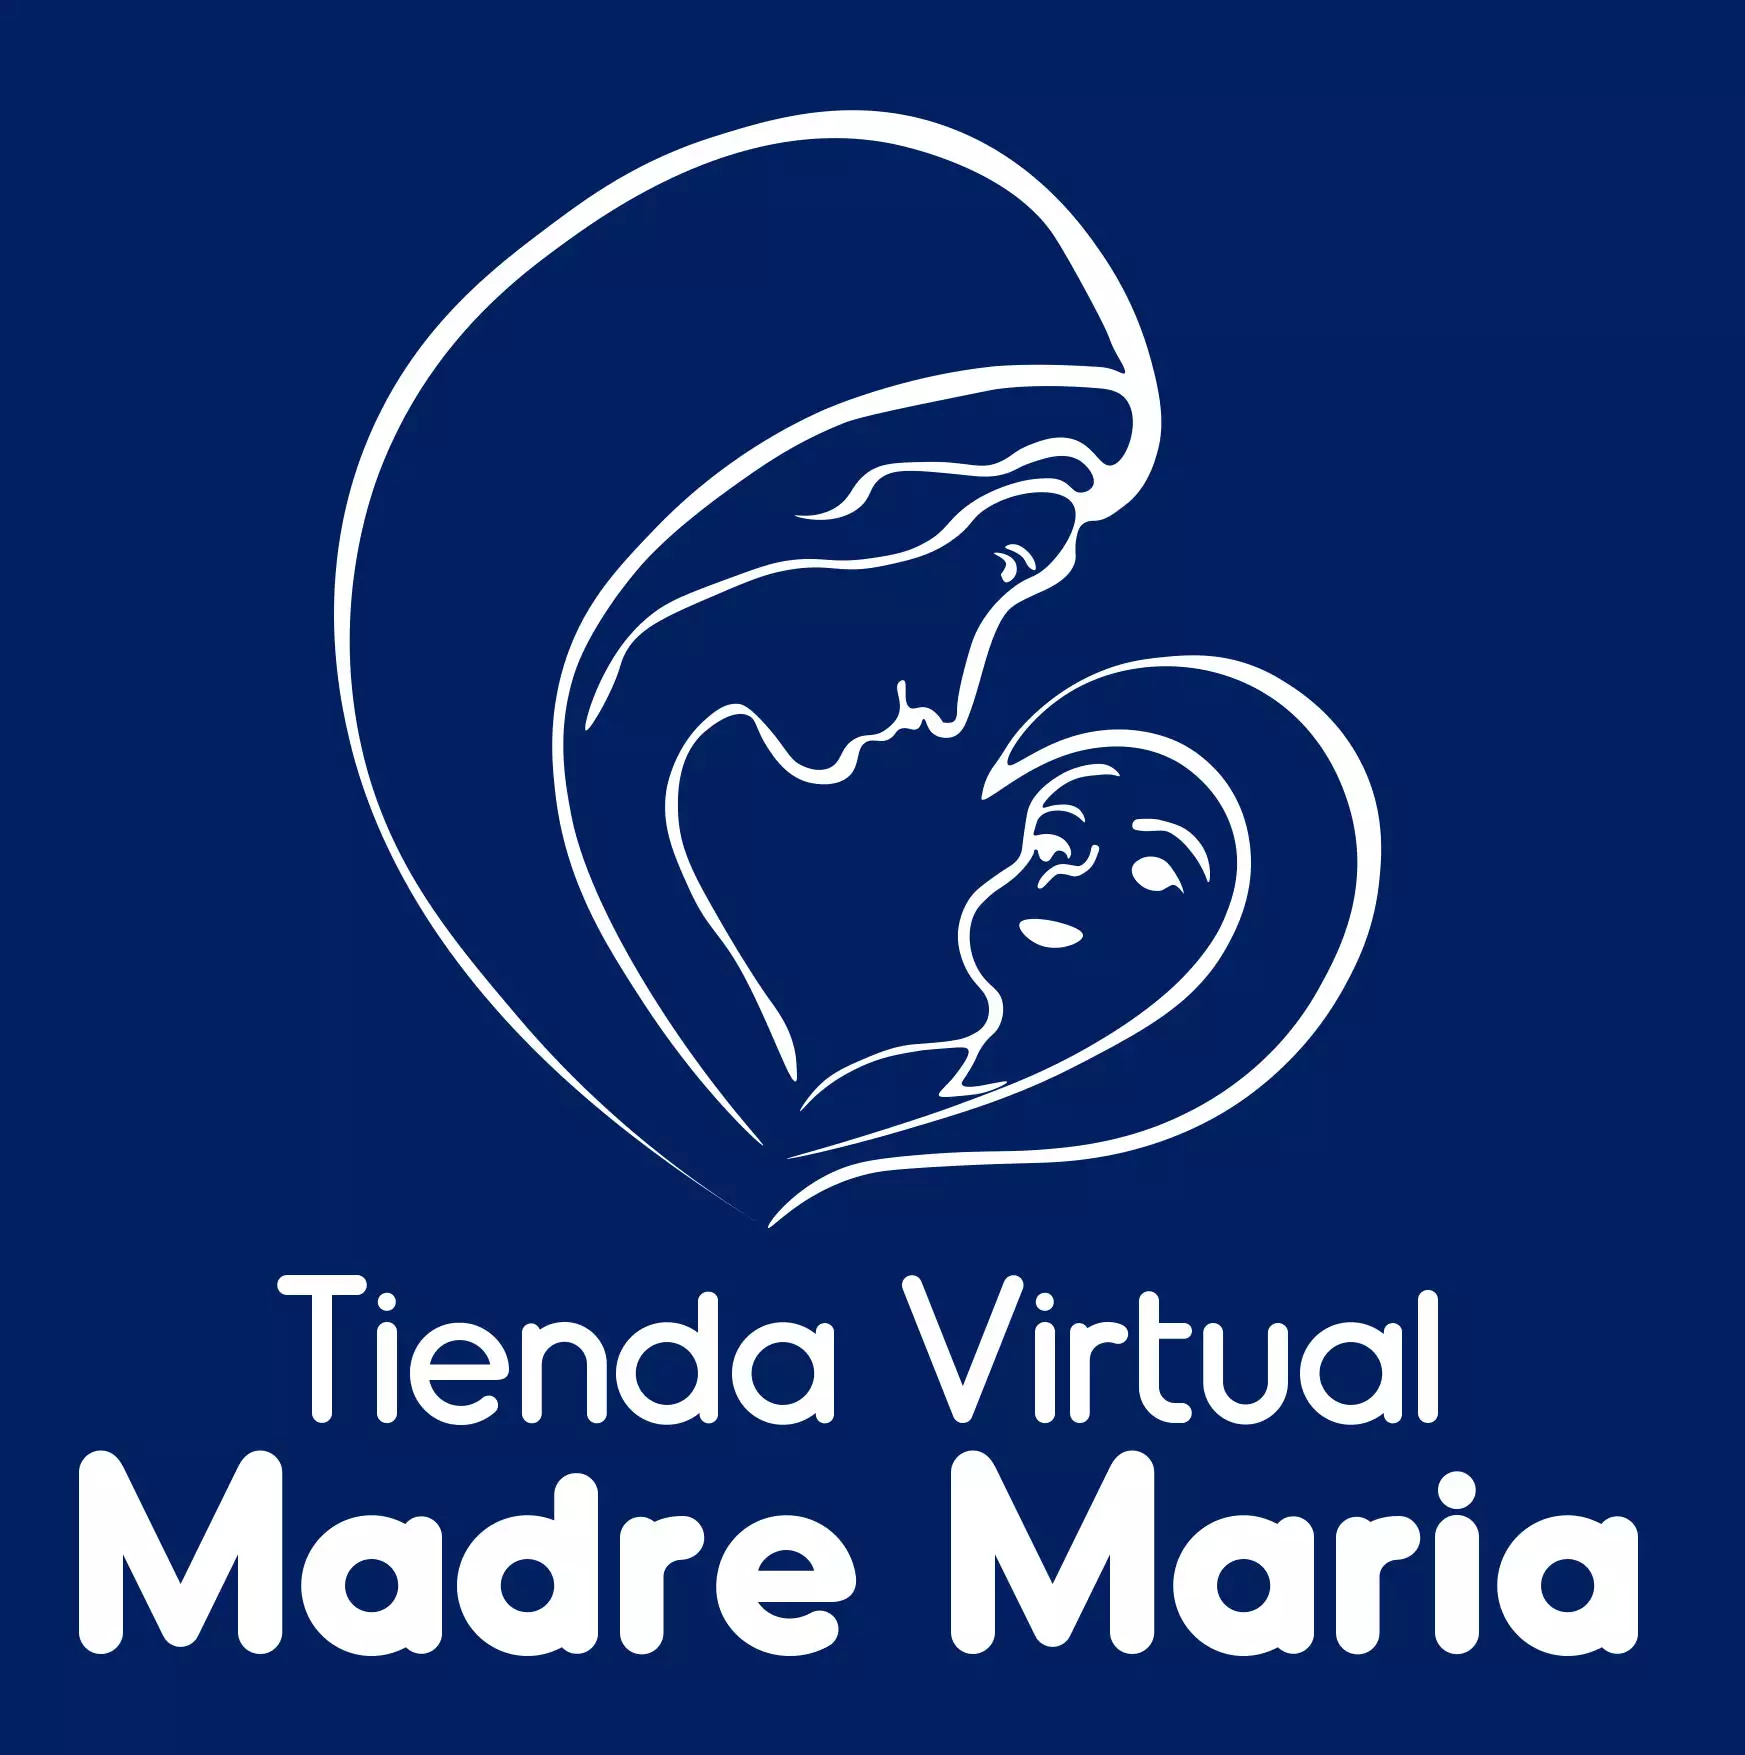 Tienda Virtual Madre María - Día sin IVA